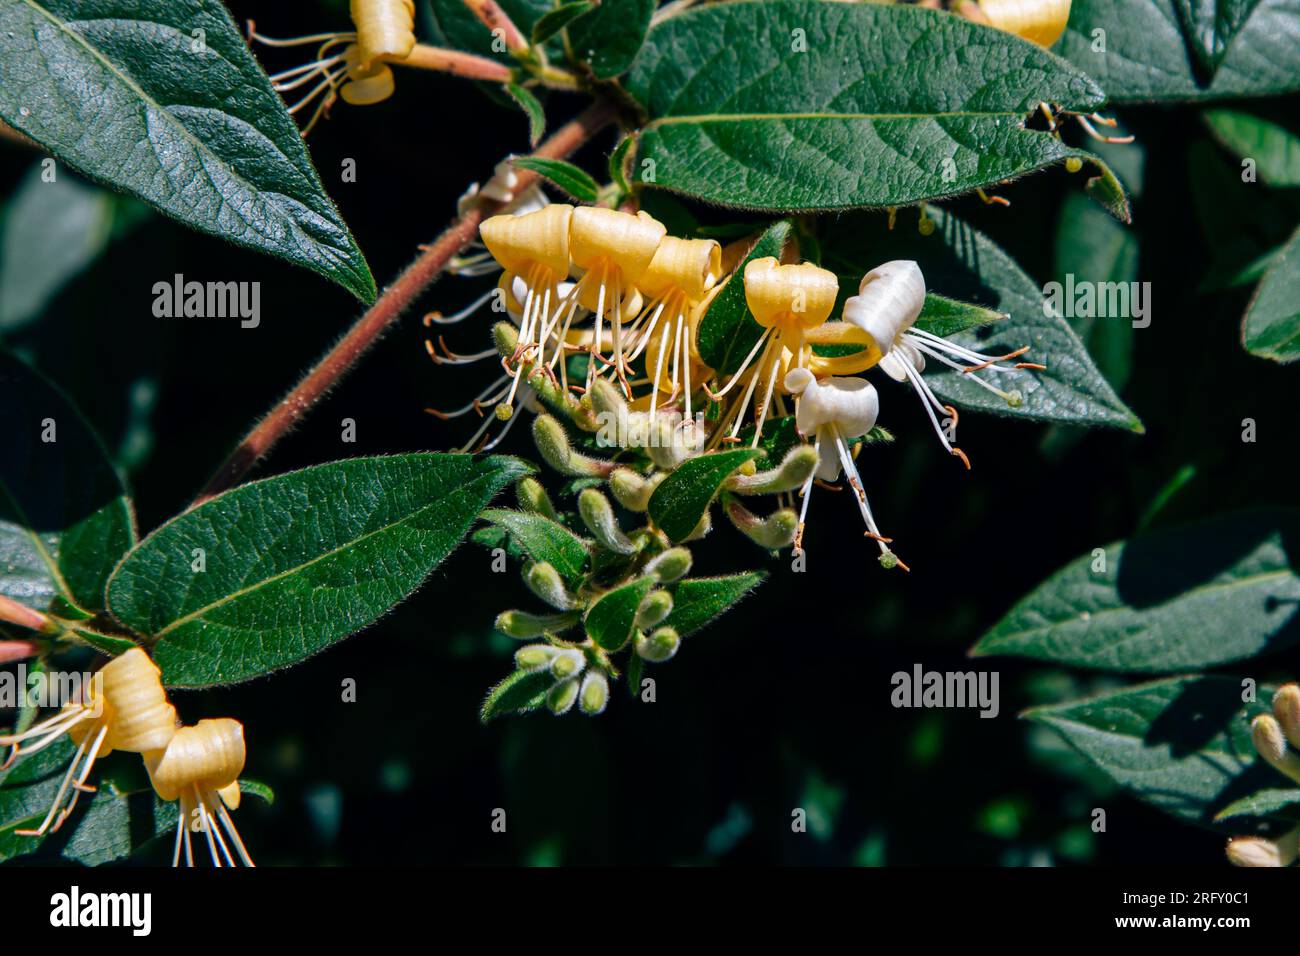 Primo piano della splendida Lonicera japonica, conosciuta come caprifoglio giapponese che cresce nel giardino: Fiori gialli e bianchi, gemme e foglie verdi Foto Stock